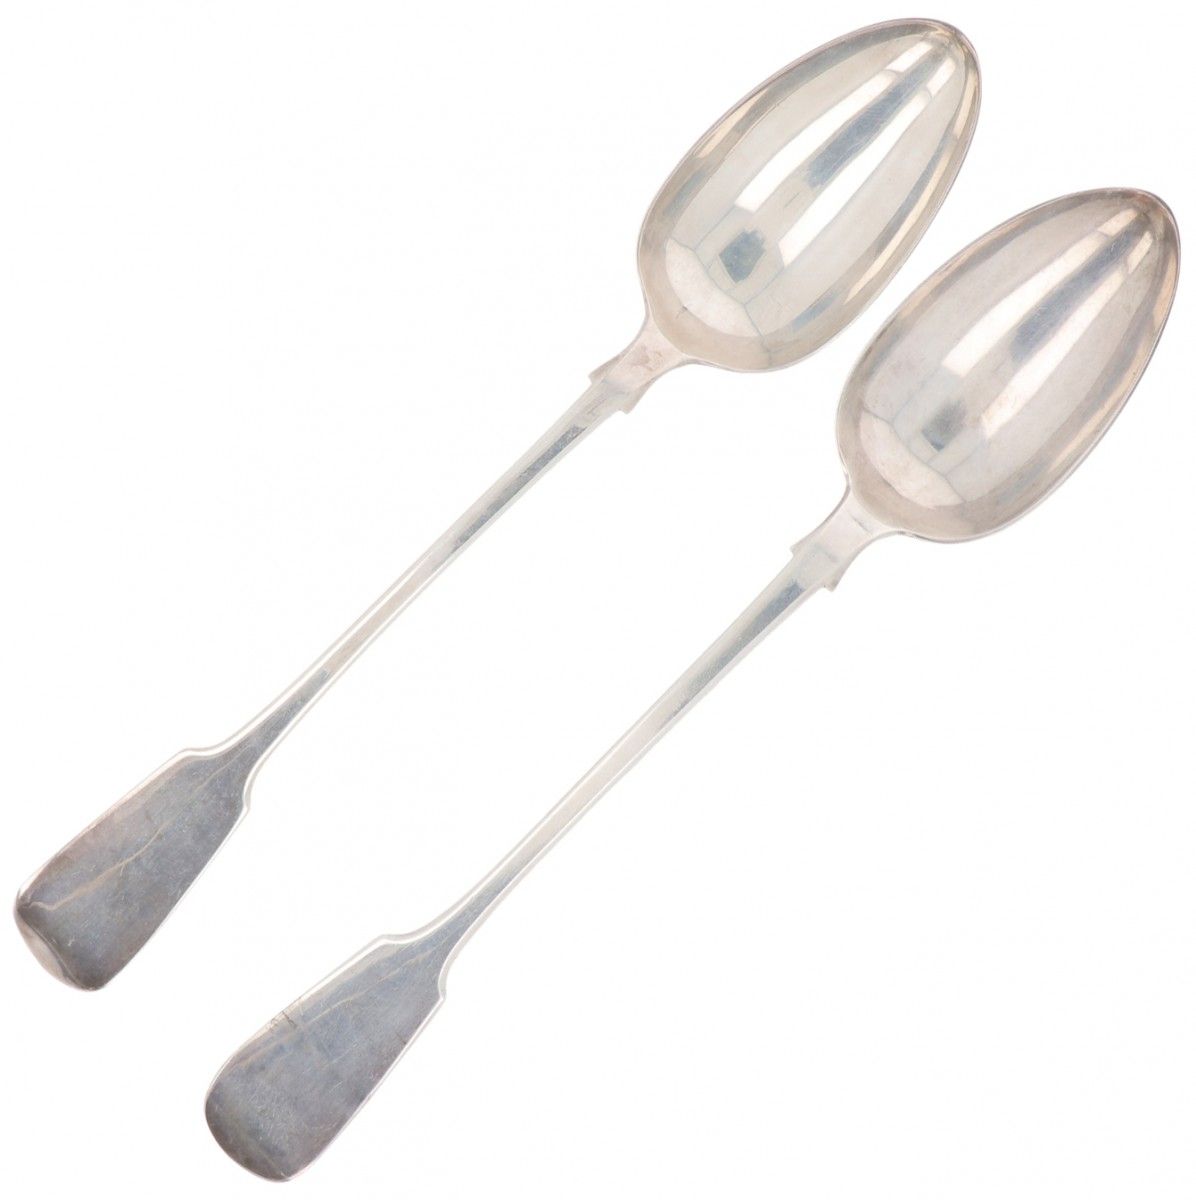 (2) piece set spoons silver. Großes Modell mit glattem Griff und leicht gebogene&hellip;